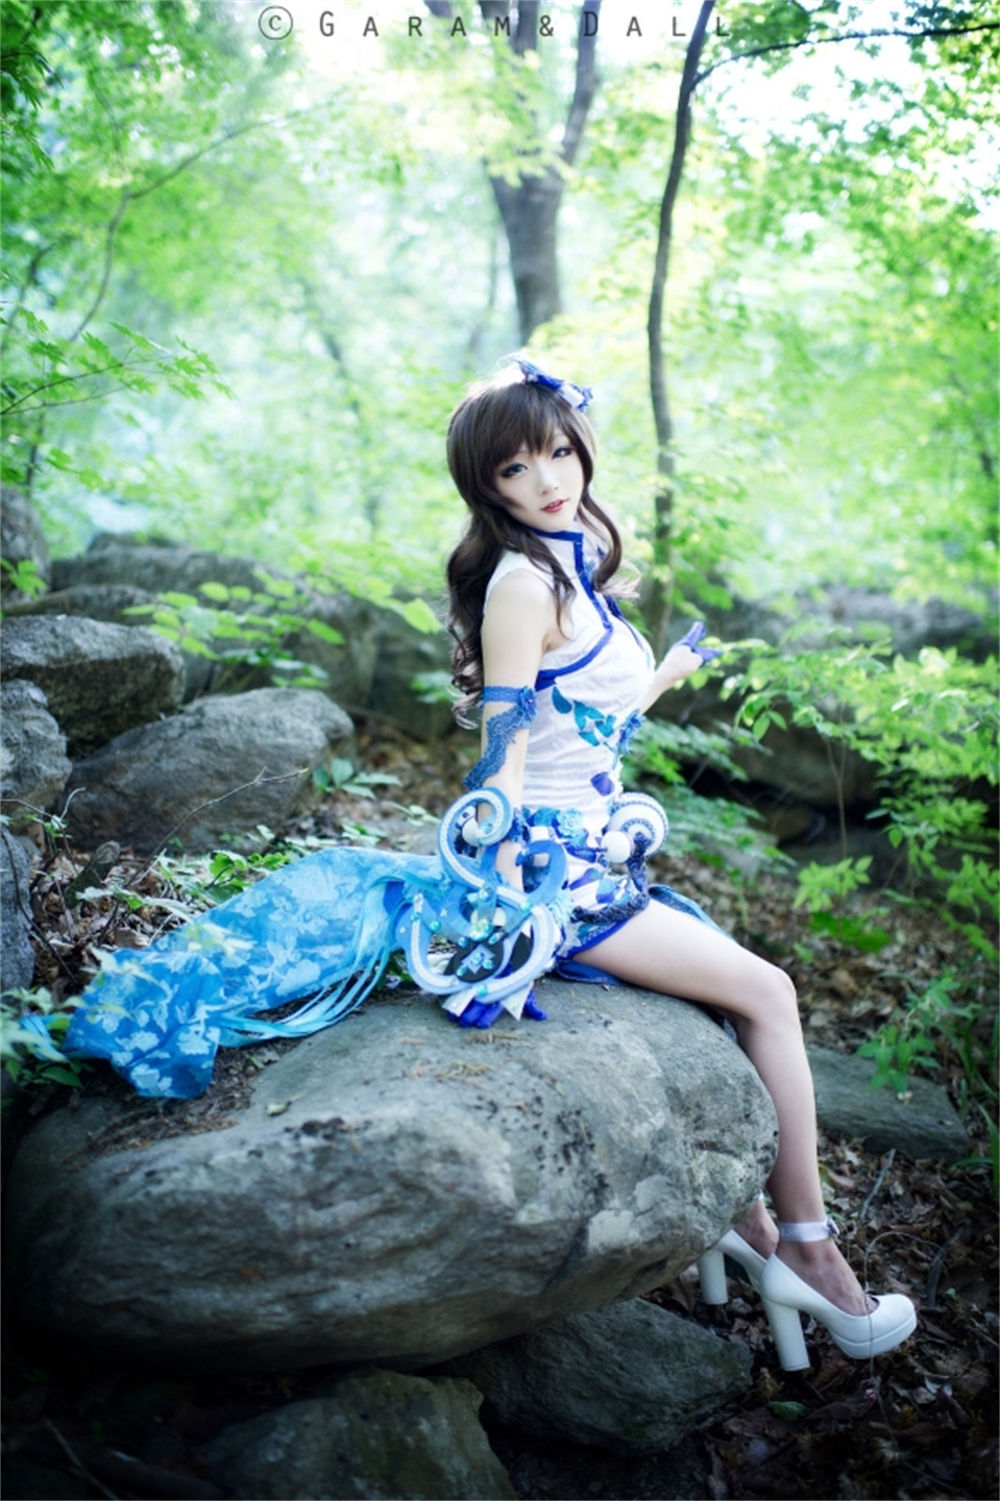 韩国知名cosplay模特@aza_miyuko美图 姿势灵活多变 小Dva太可爱了！图片